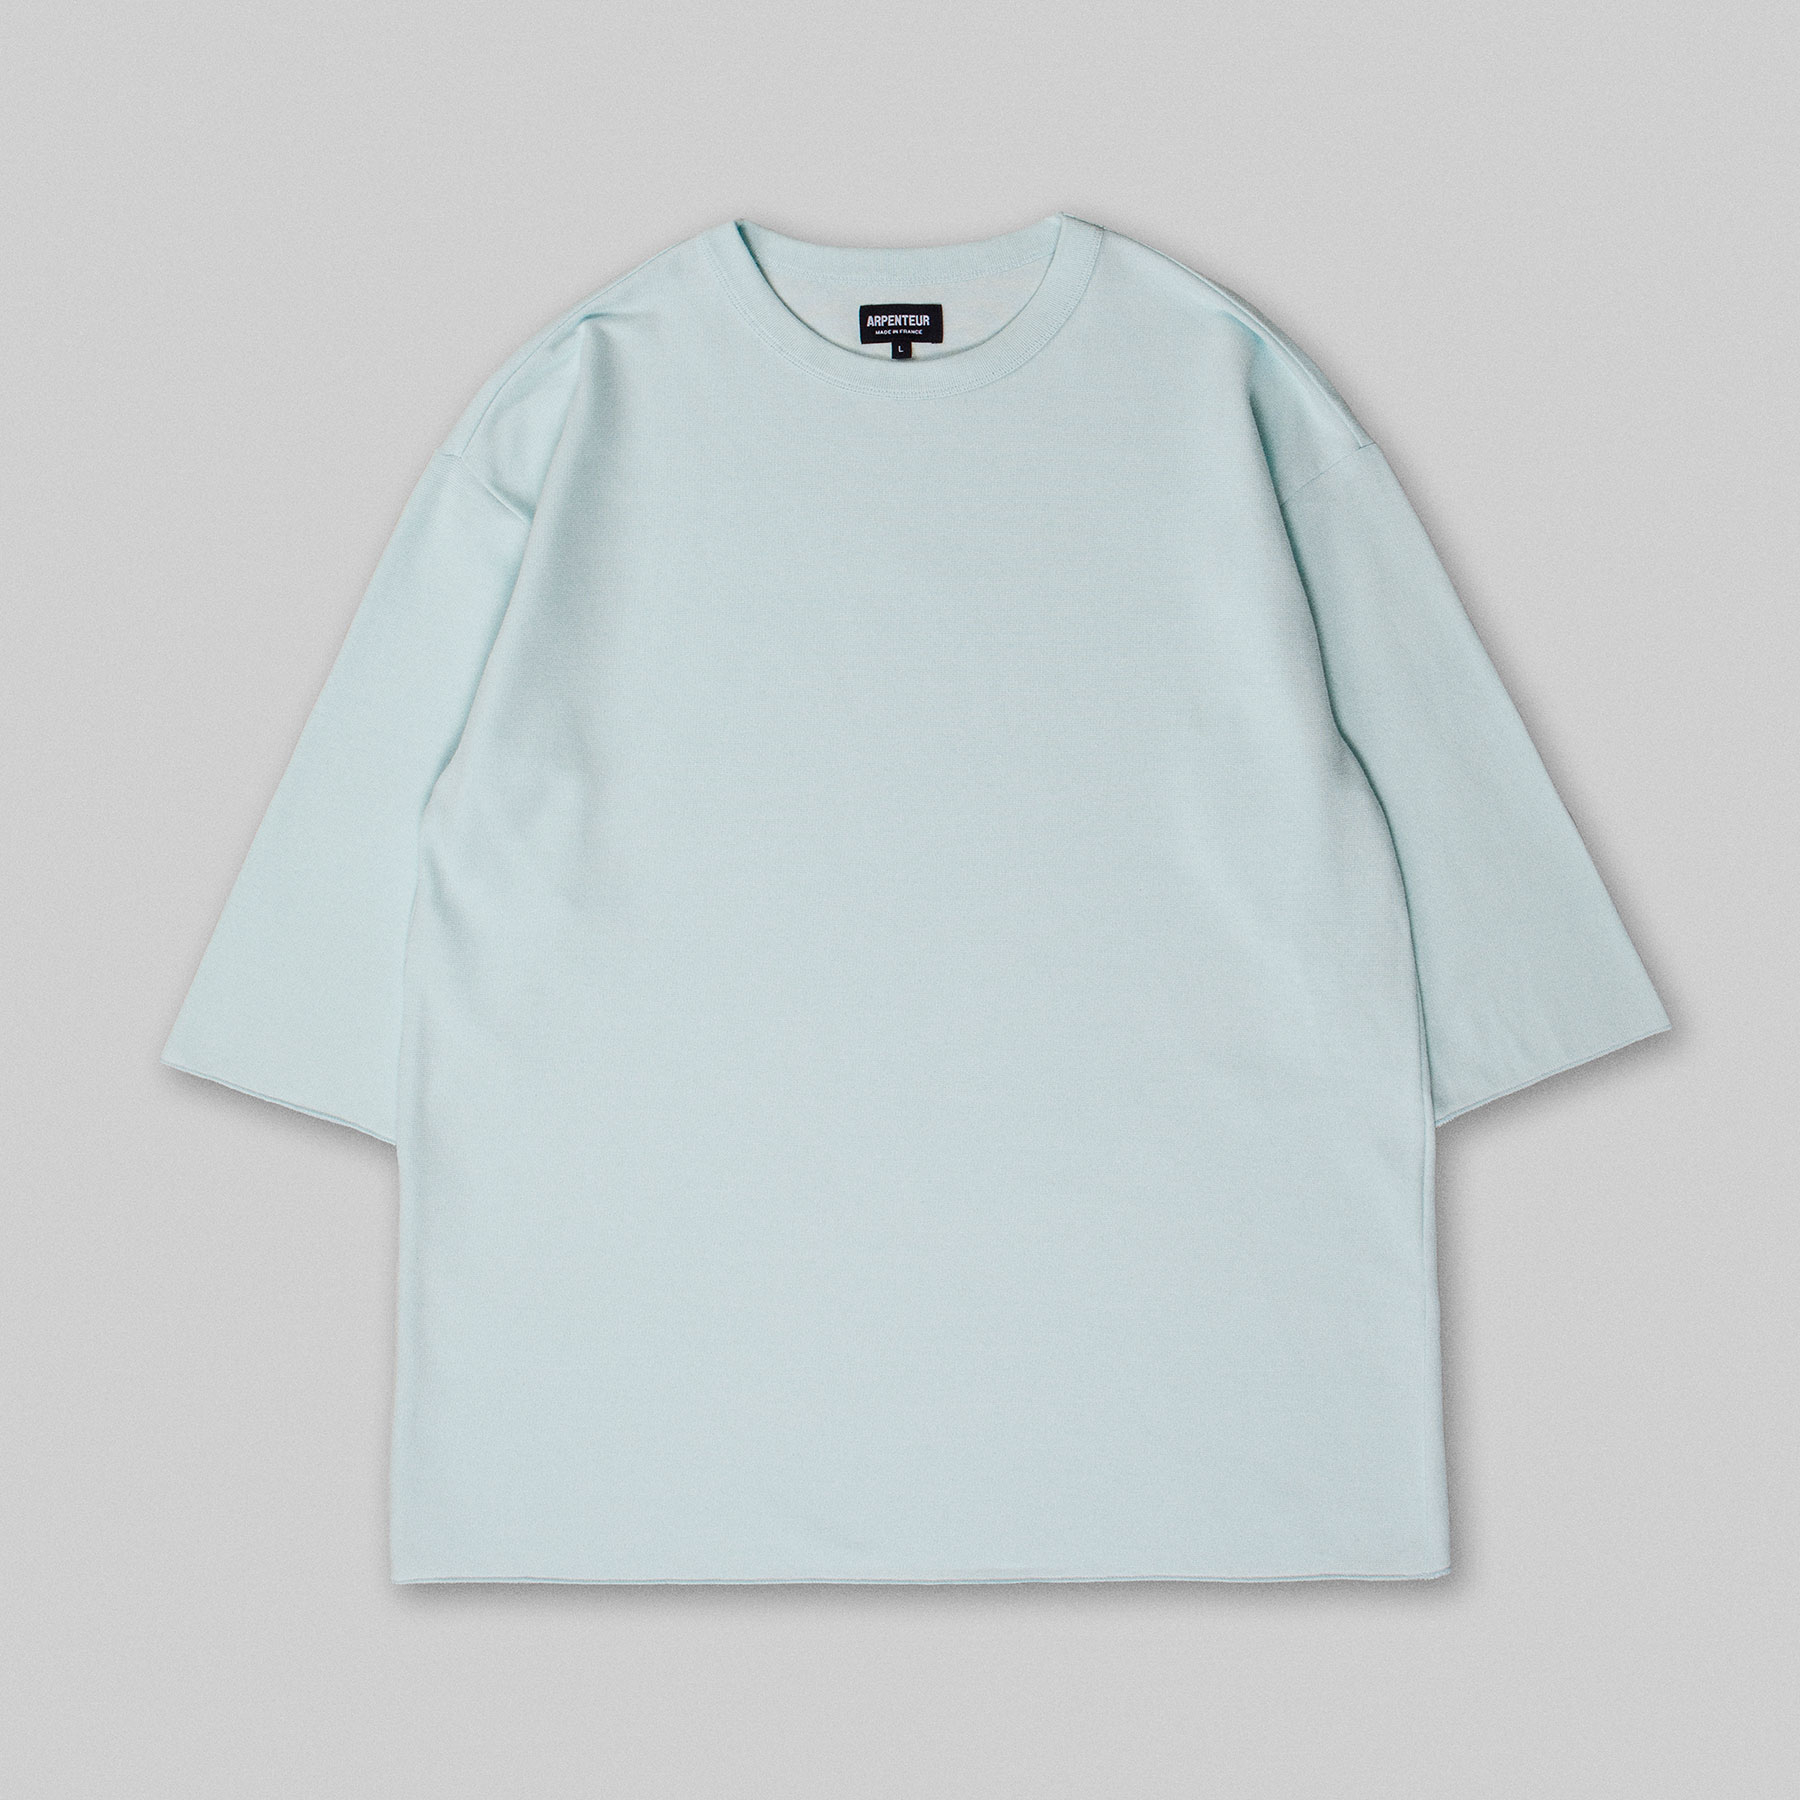 MARINIERE t-shirt by Arpenteur in Pale cloud color